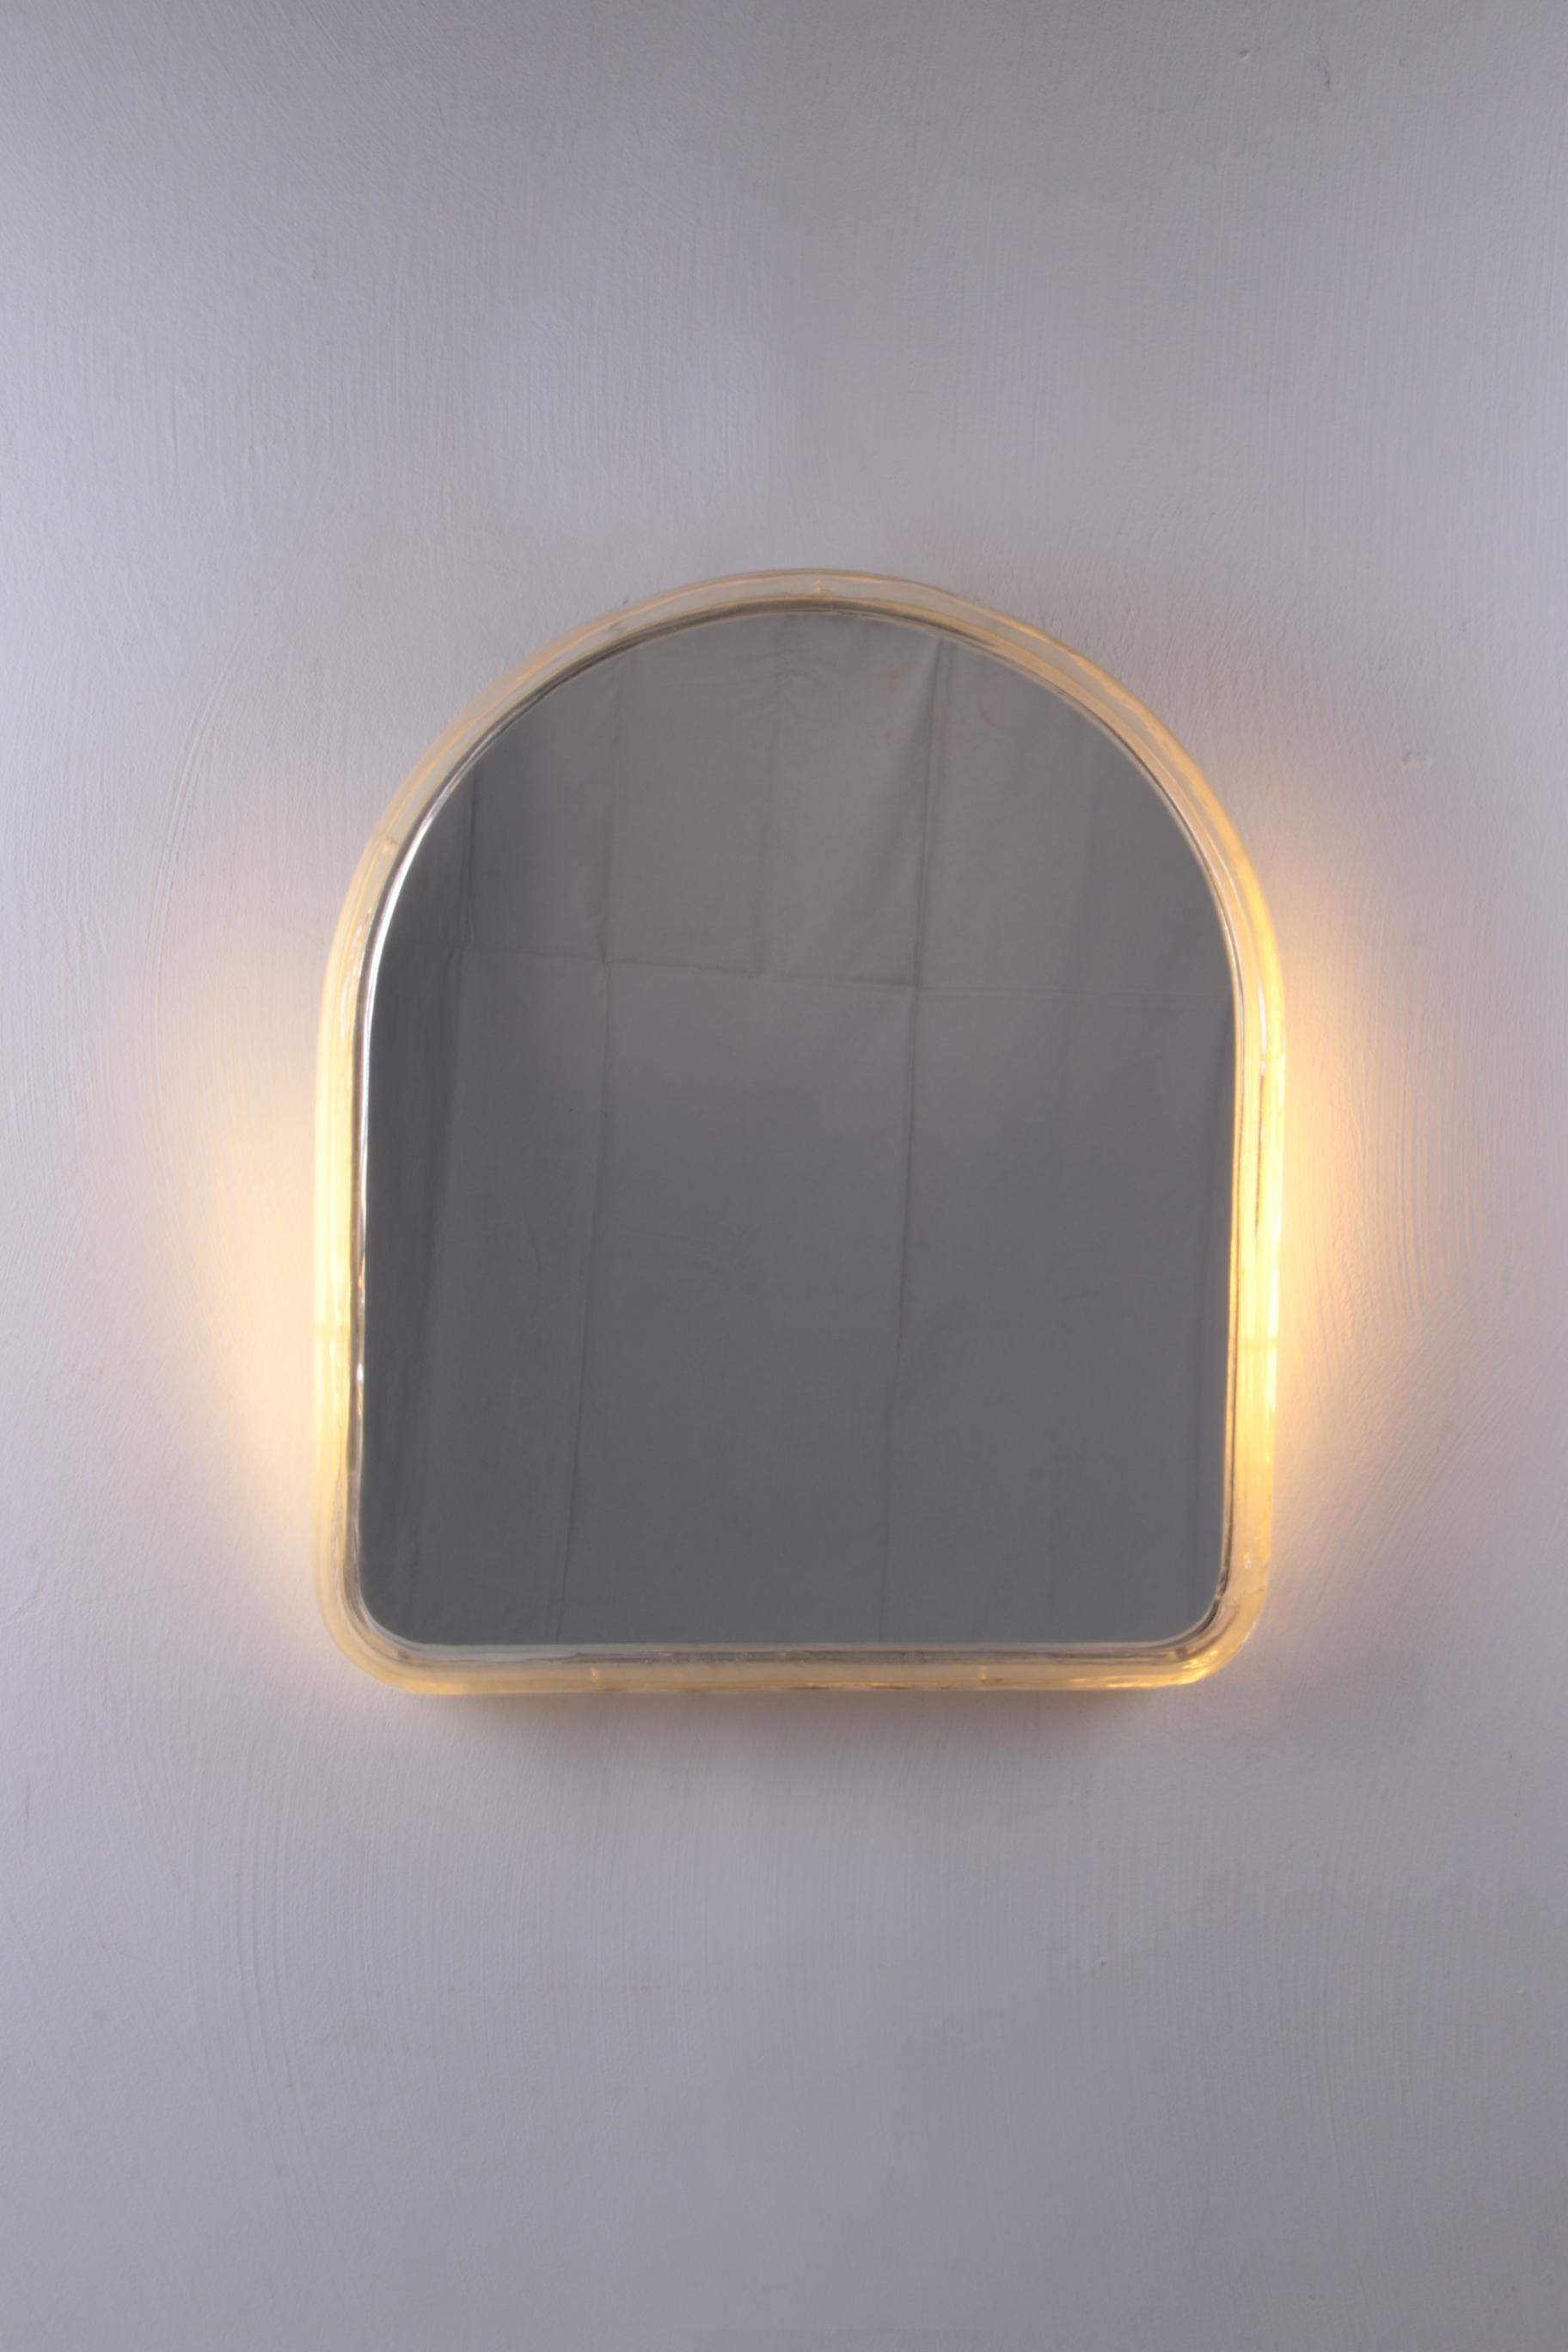 Der schöne Spiegel von Hillebrand ist aus Metall mit Plexiglas und wurde in den 1960er Jahren hergestellt.

Die bei diesem Entwurf verwendete Form weist darauf hin, dass es sich bei diesem Spiegel um ein seltenes Modell handelt.

Der Spiegel verfügt